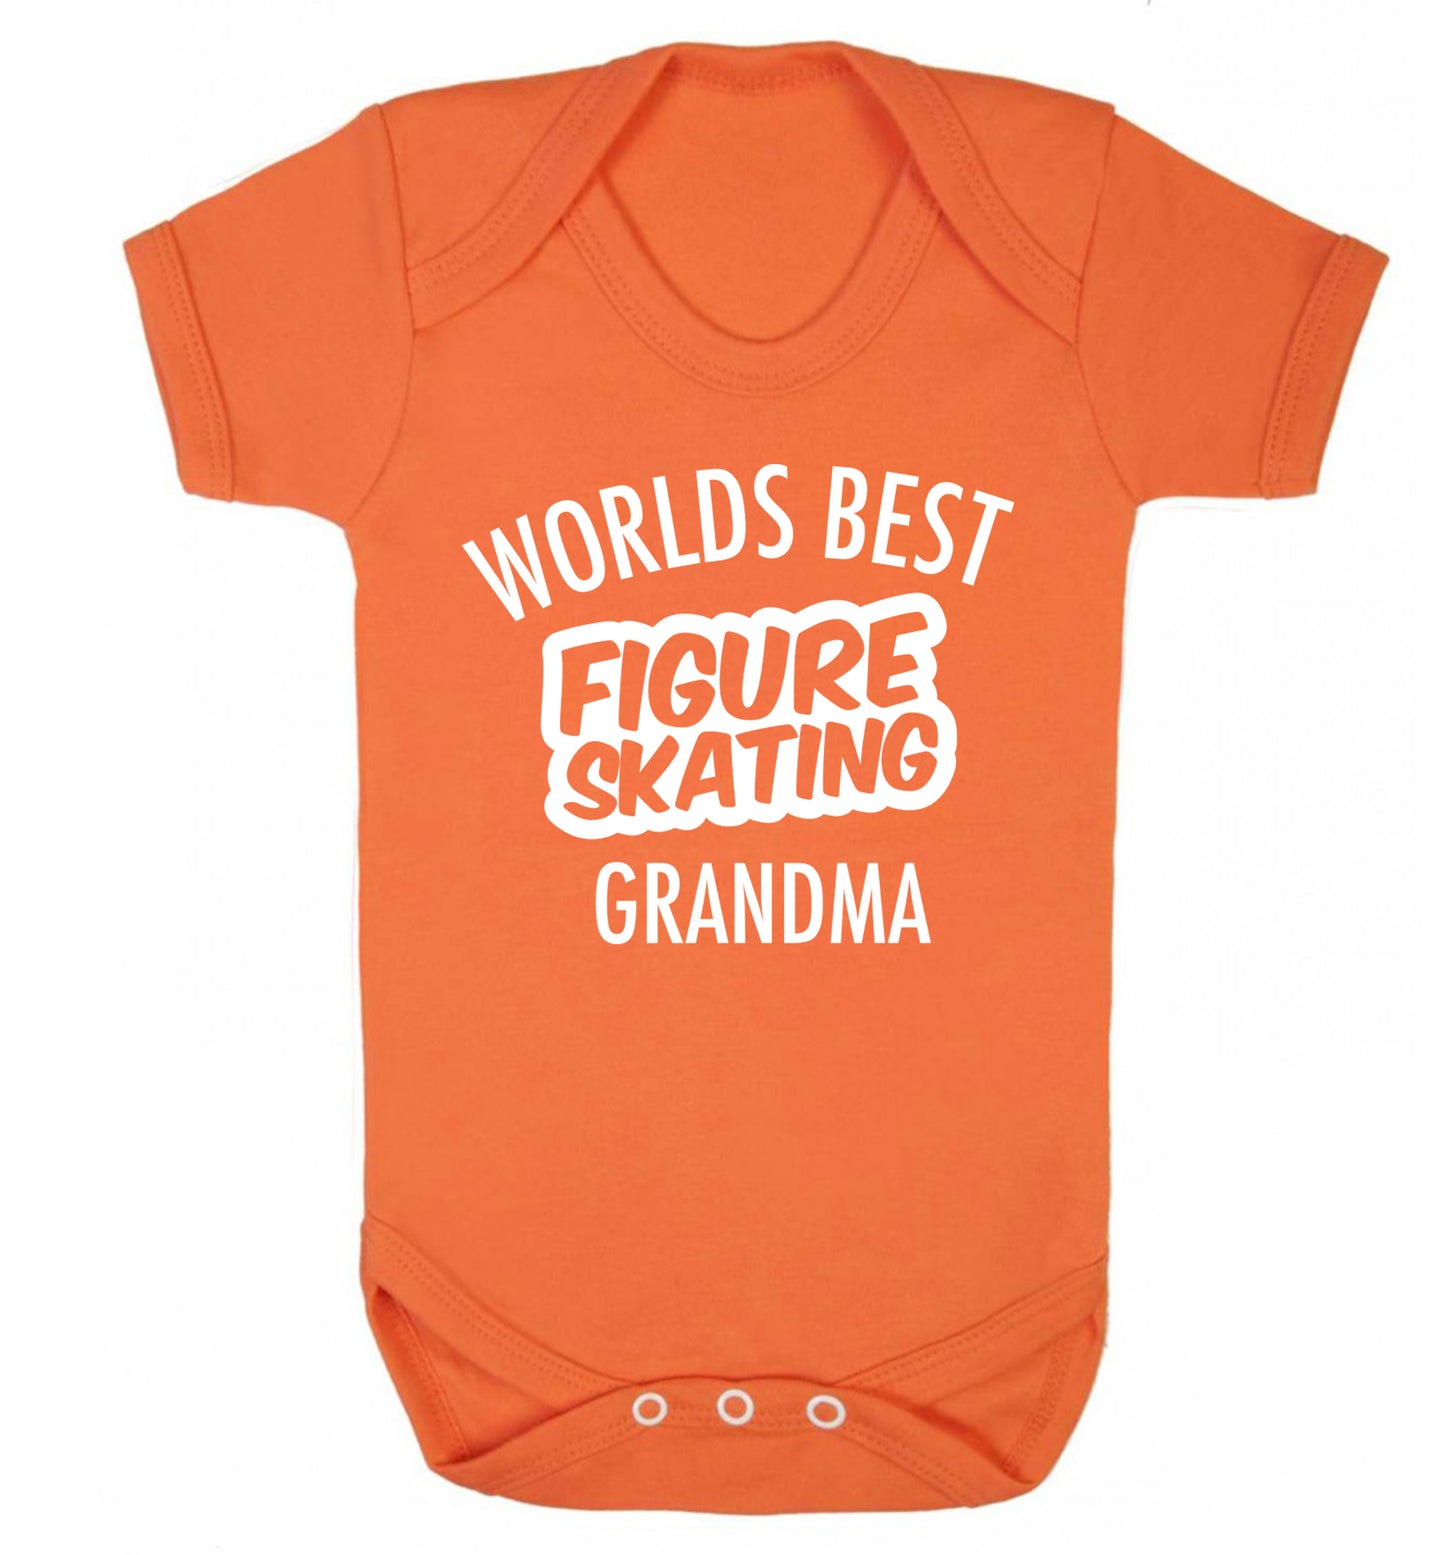 Worlds best figure skating grandma Baby Vest orange 18-24 months